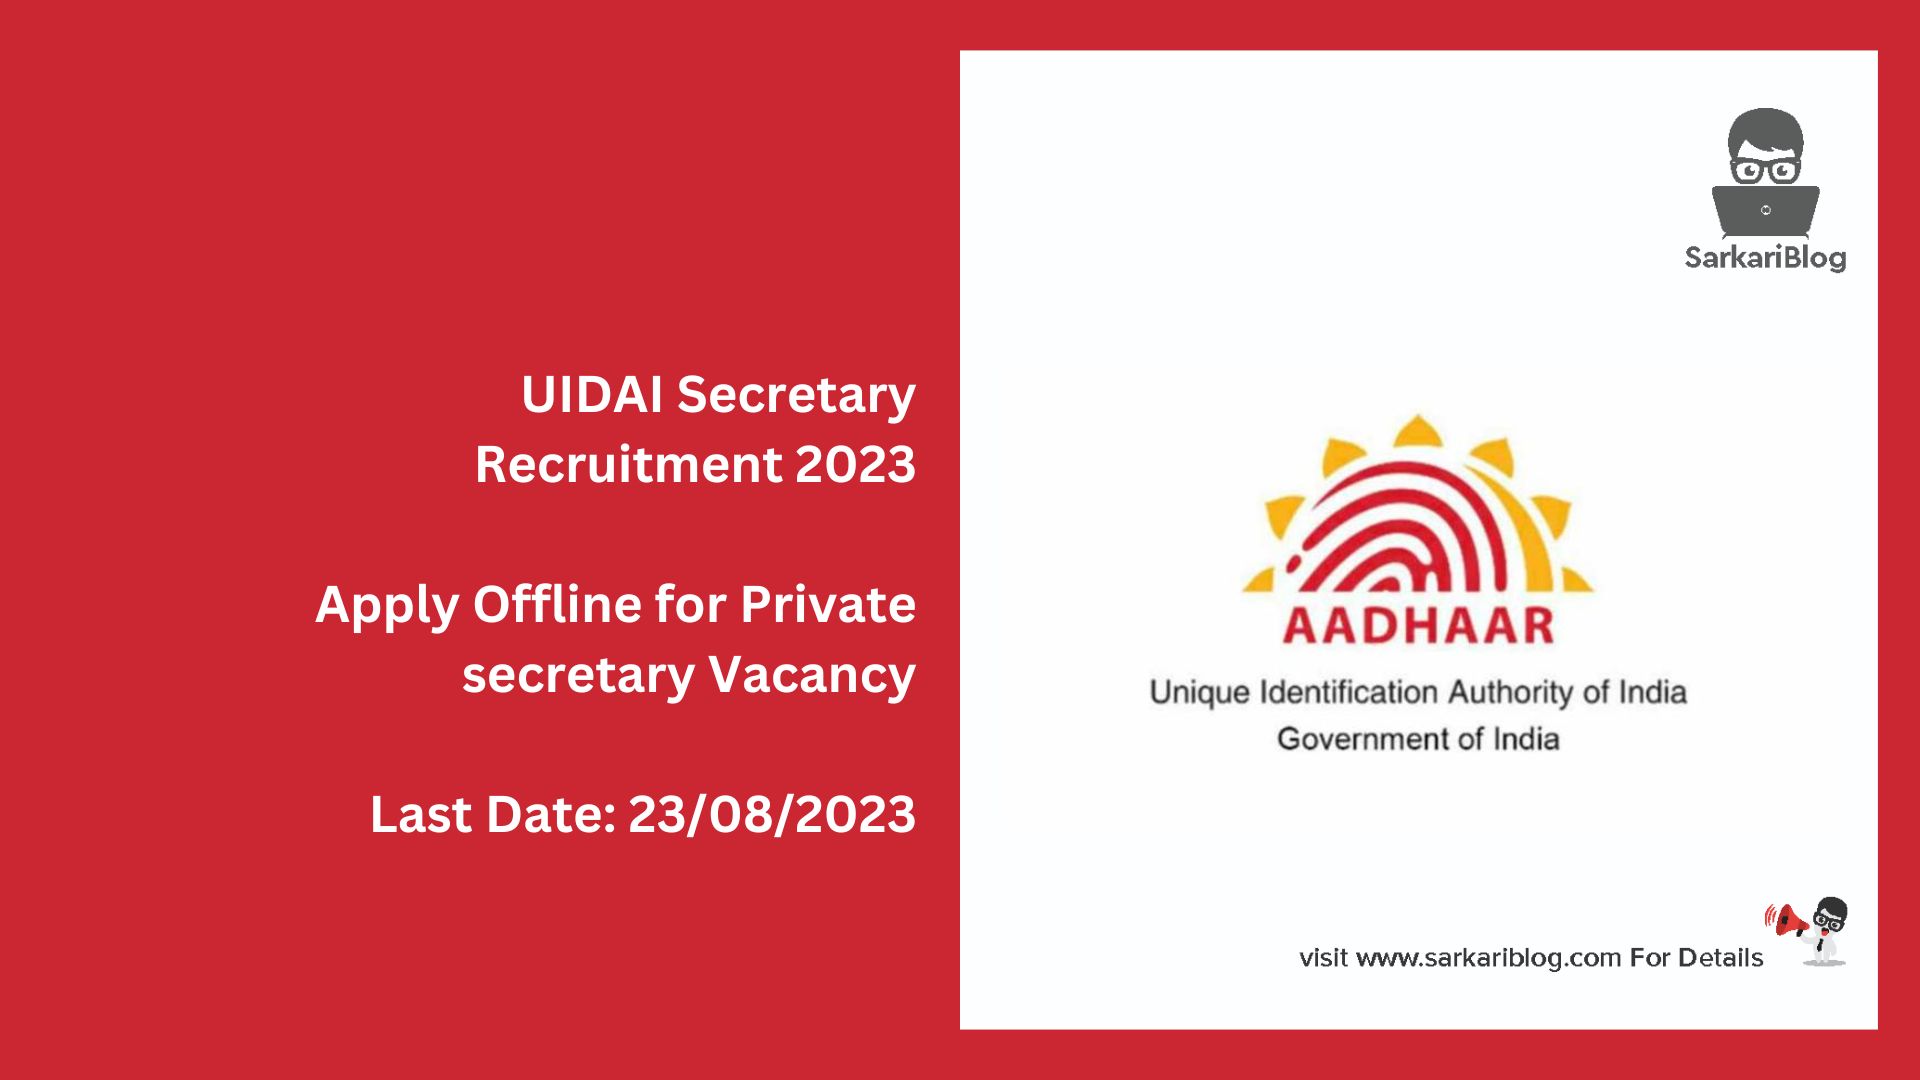 UIDAI Secretary Recruitment 2023